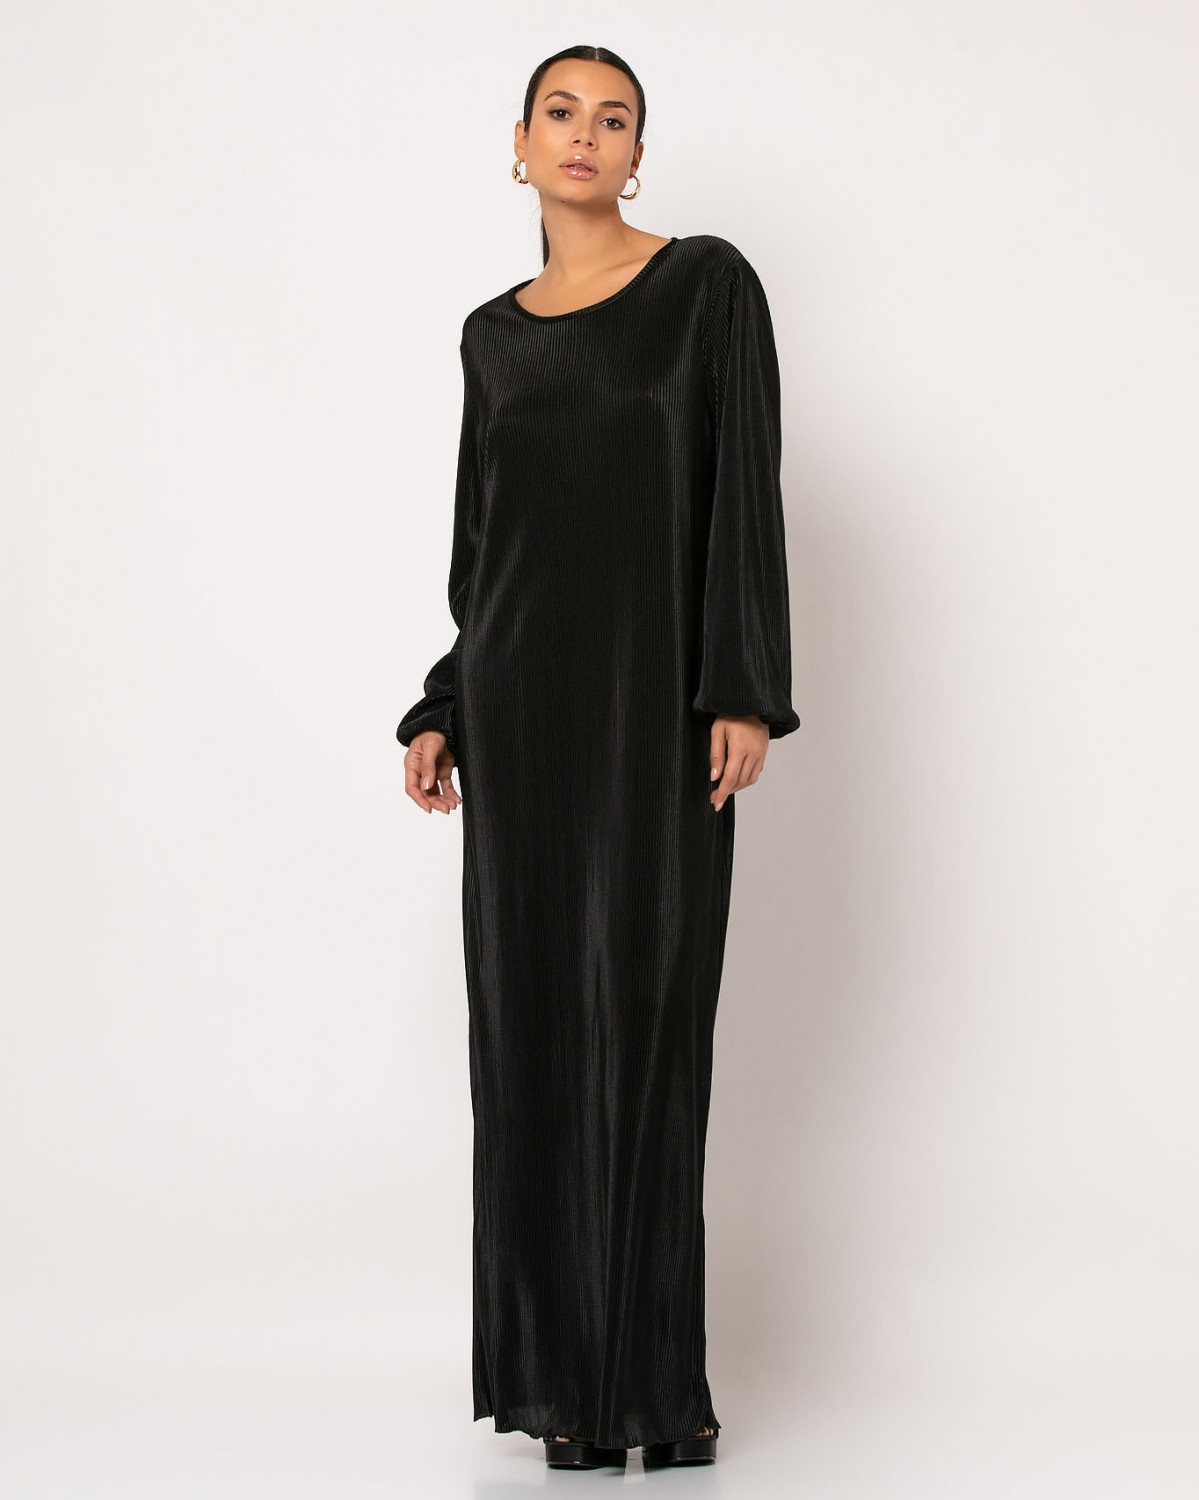 Φόρεμα maxi μακρυμάνικο με ζώνη στην μέση Μαύρο 